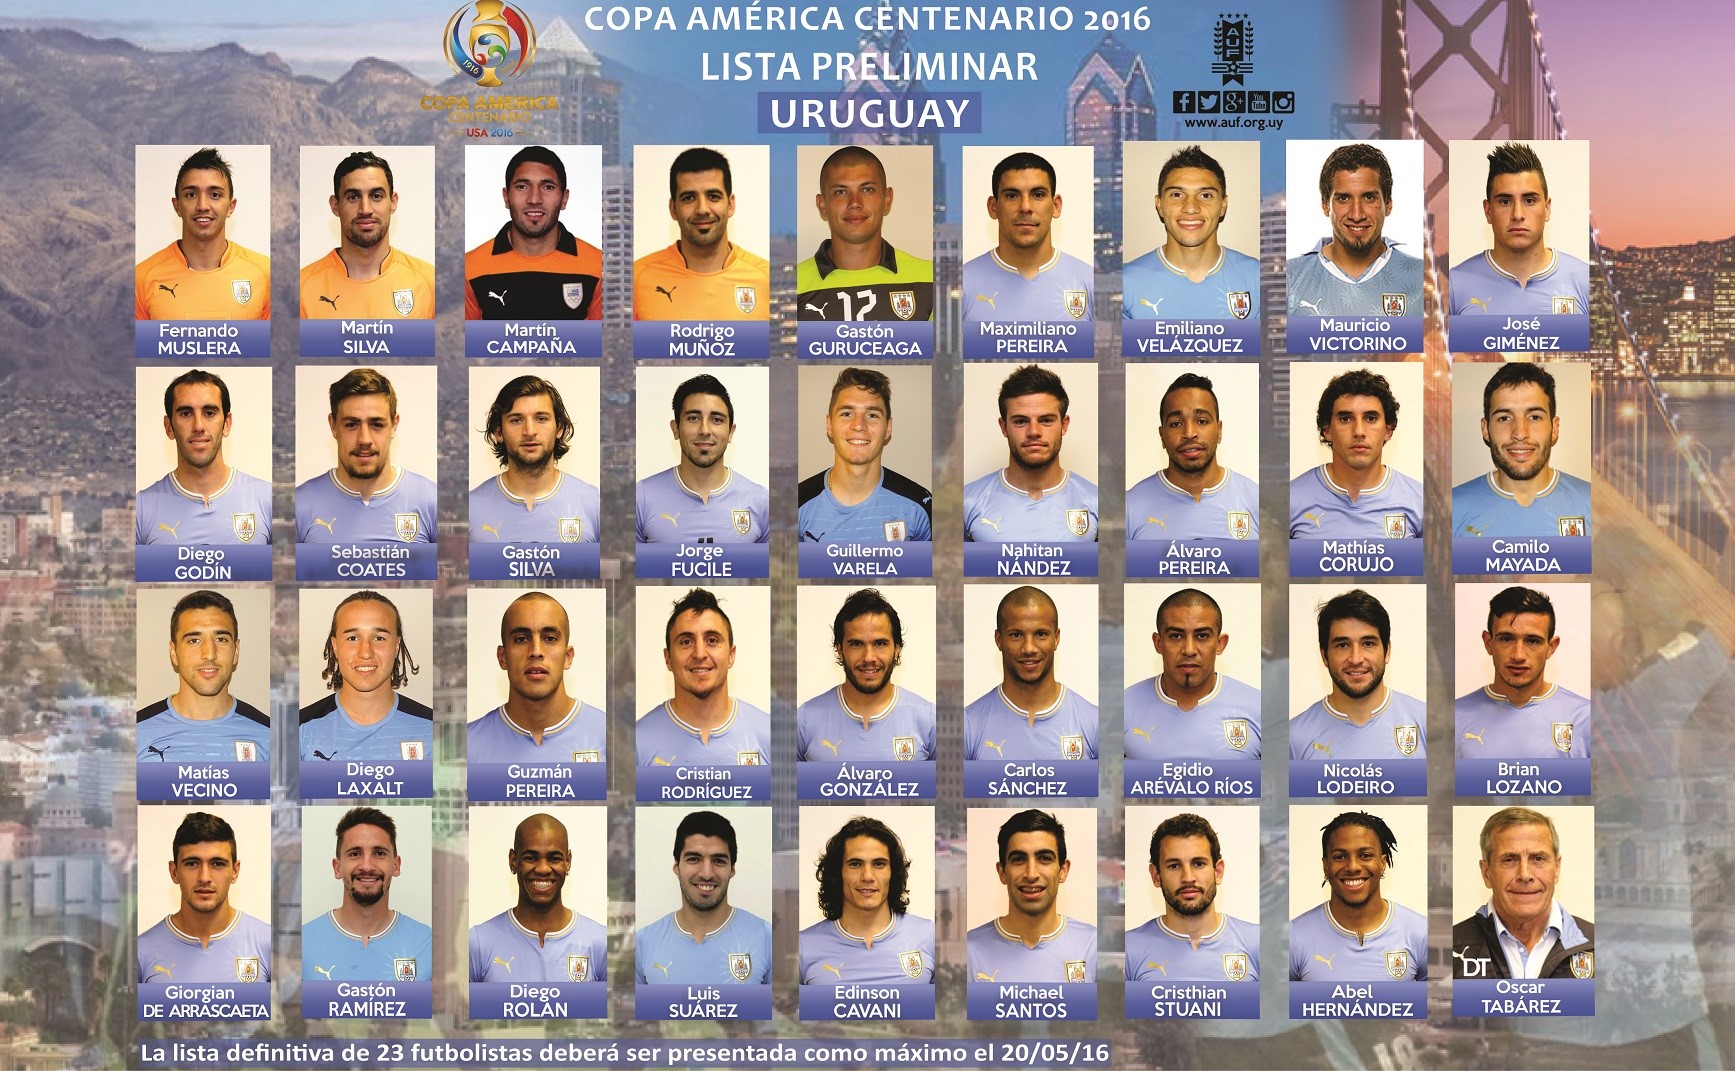 Lista preliminar de la selección uruguaya para la Copa América Centenario